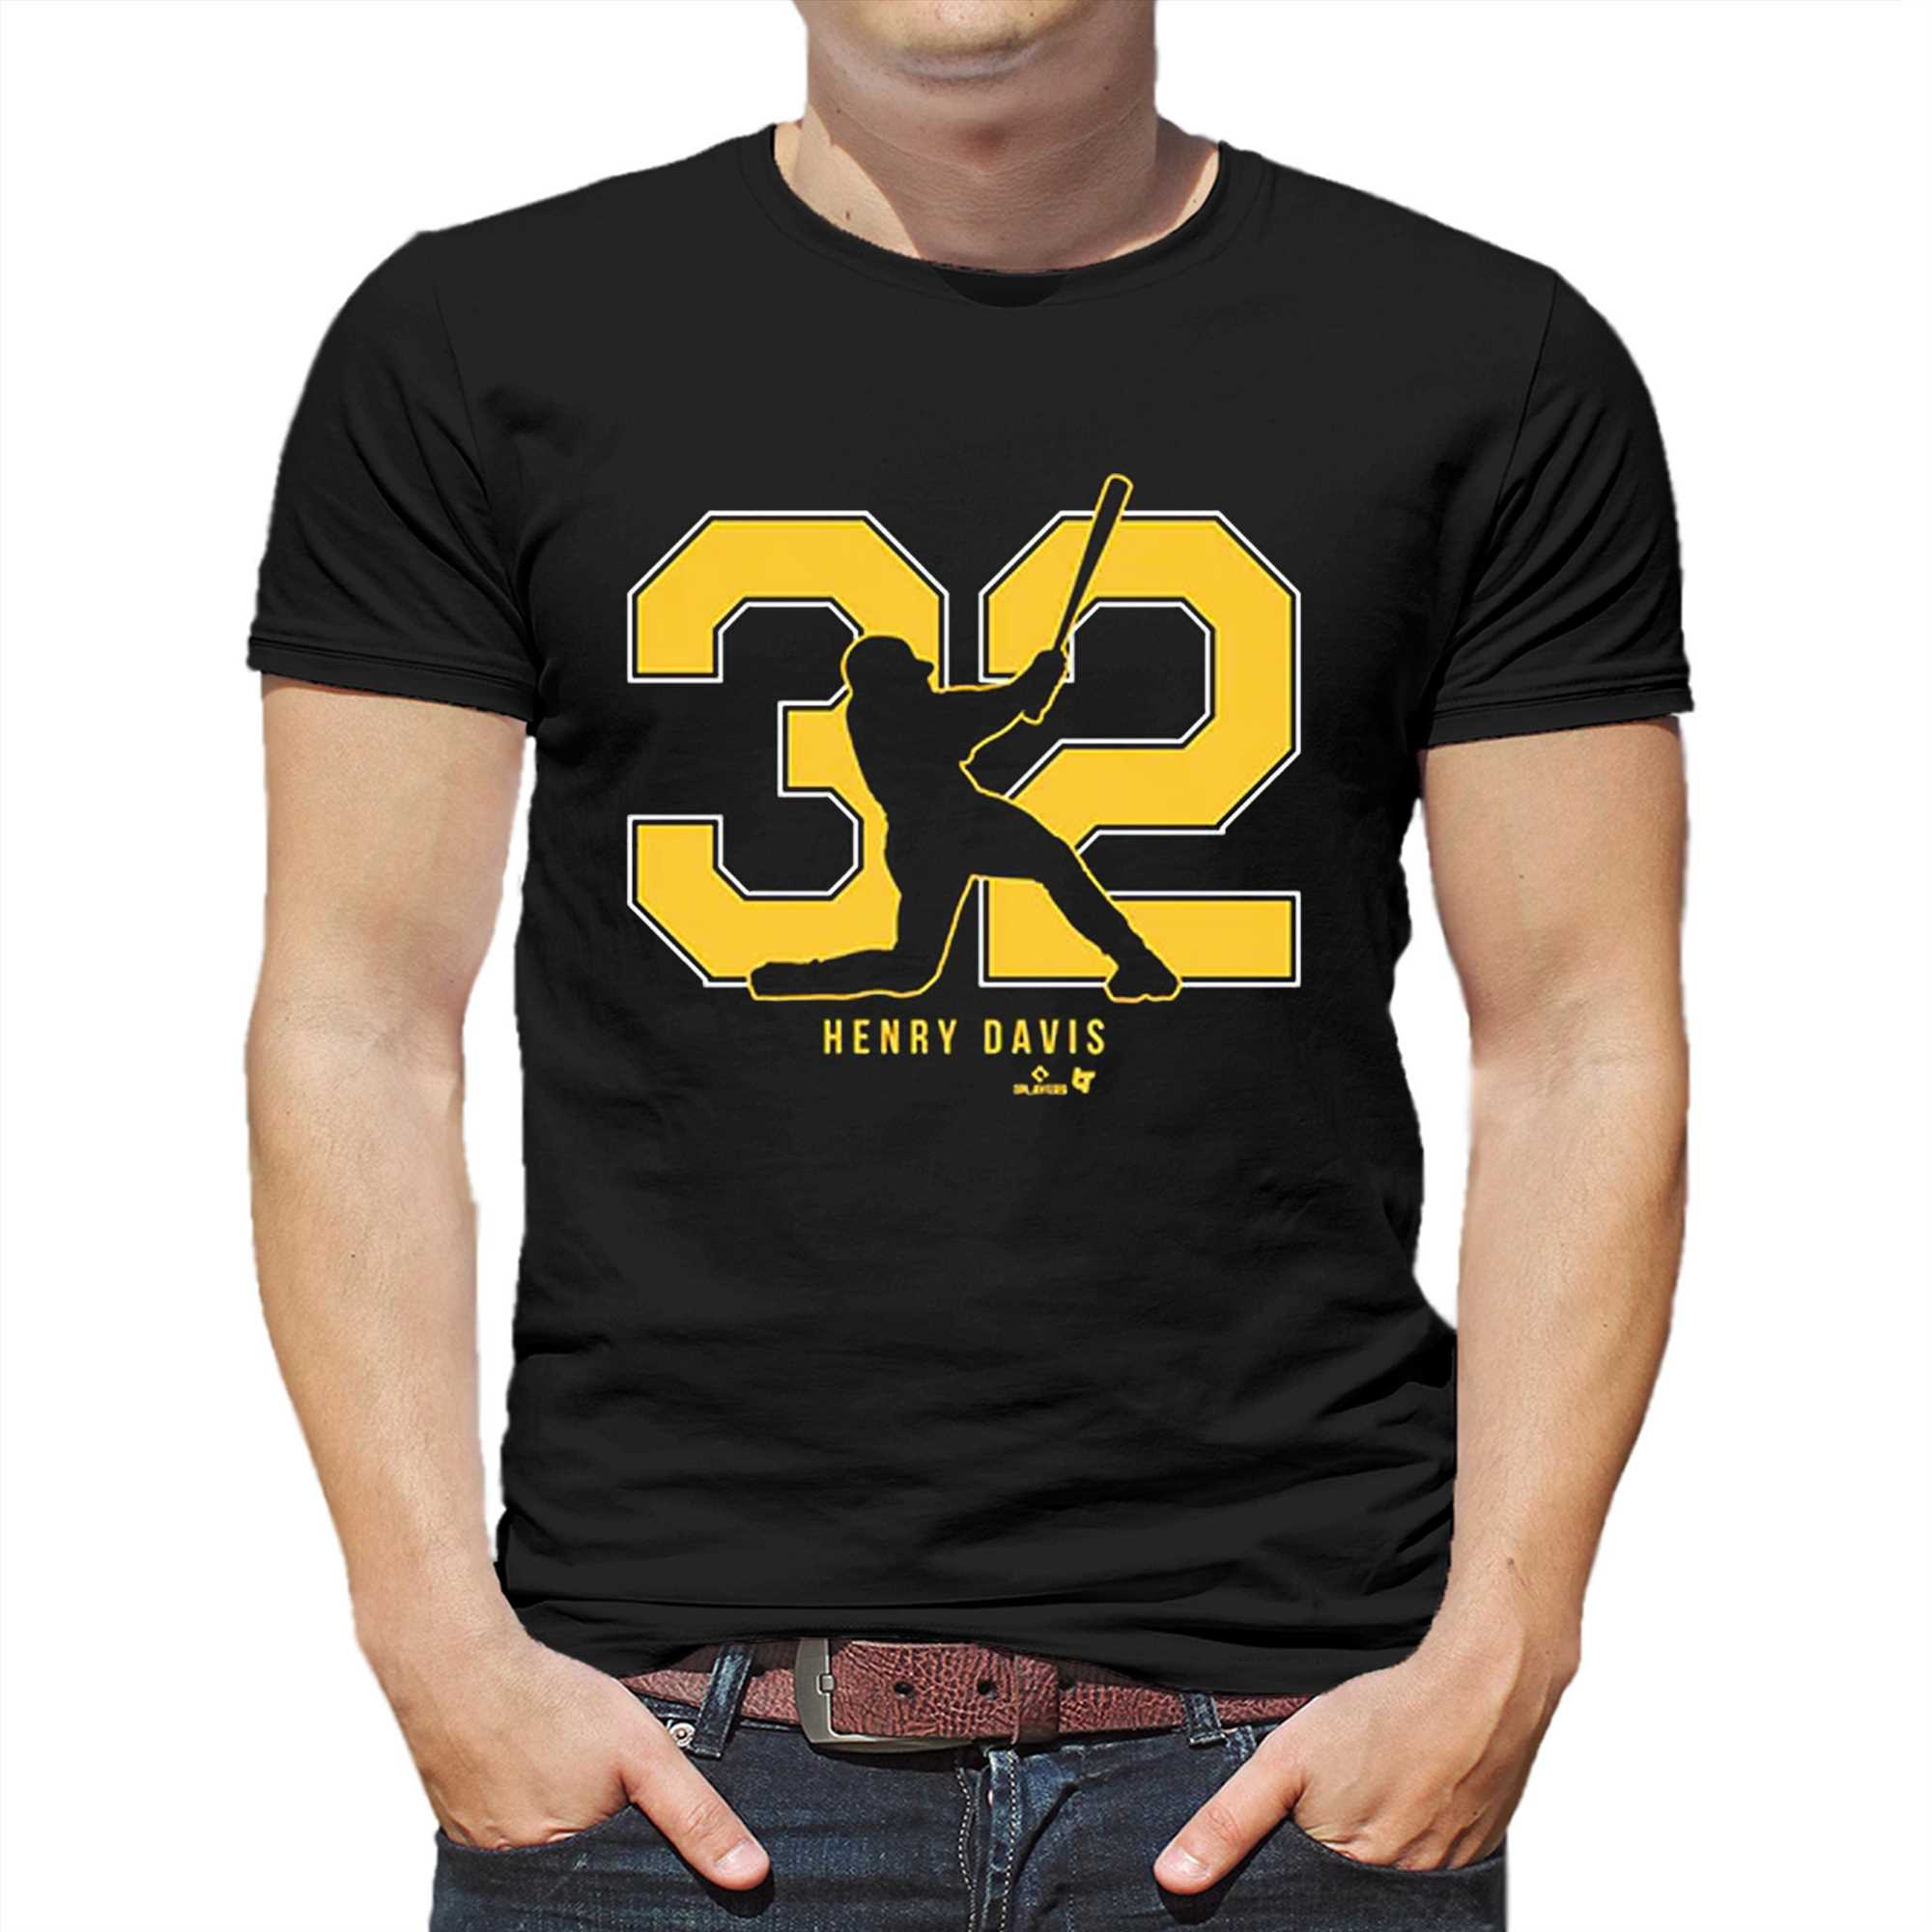 henry davis 32 pittsburgh shirt 1